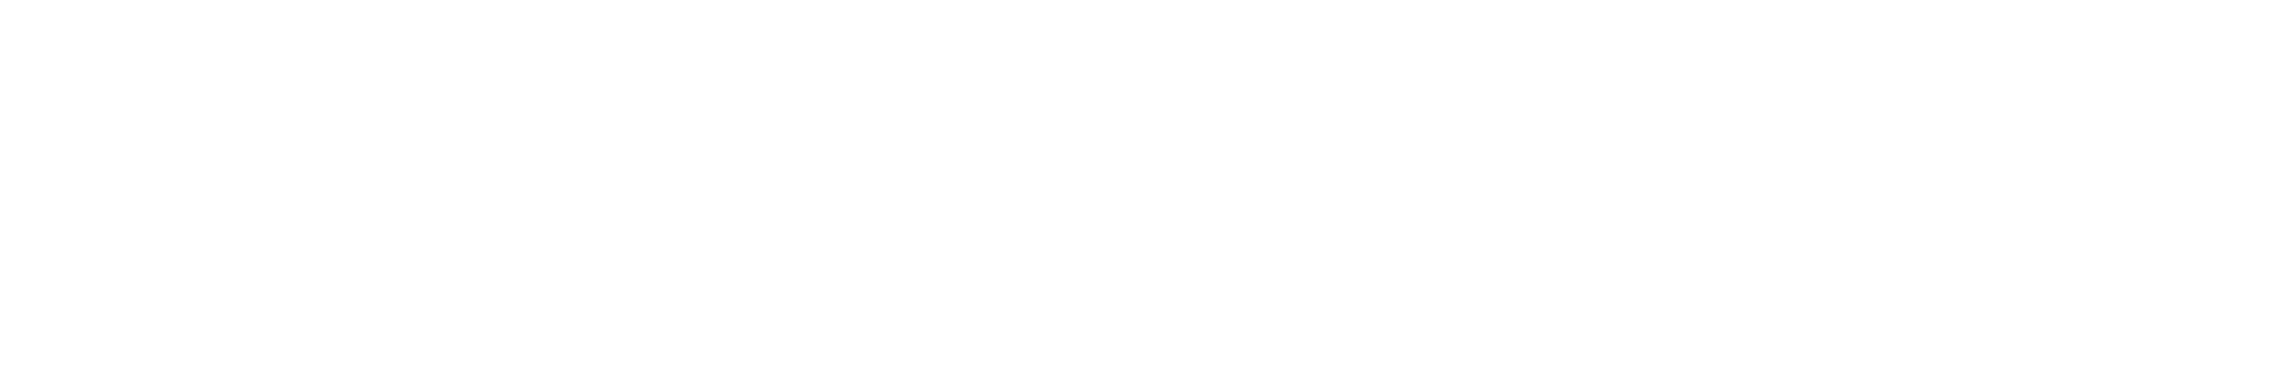 Butterworth Financial Group